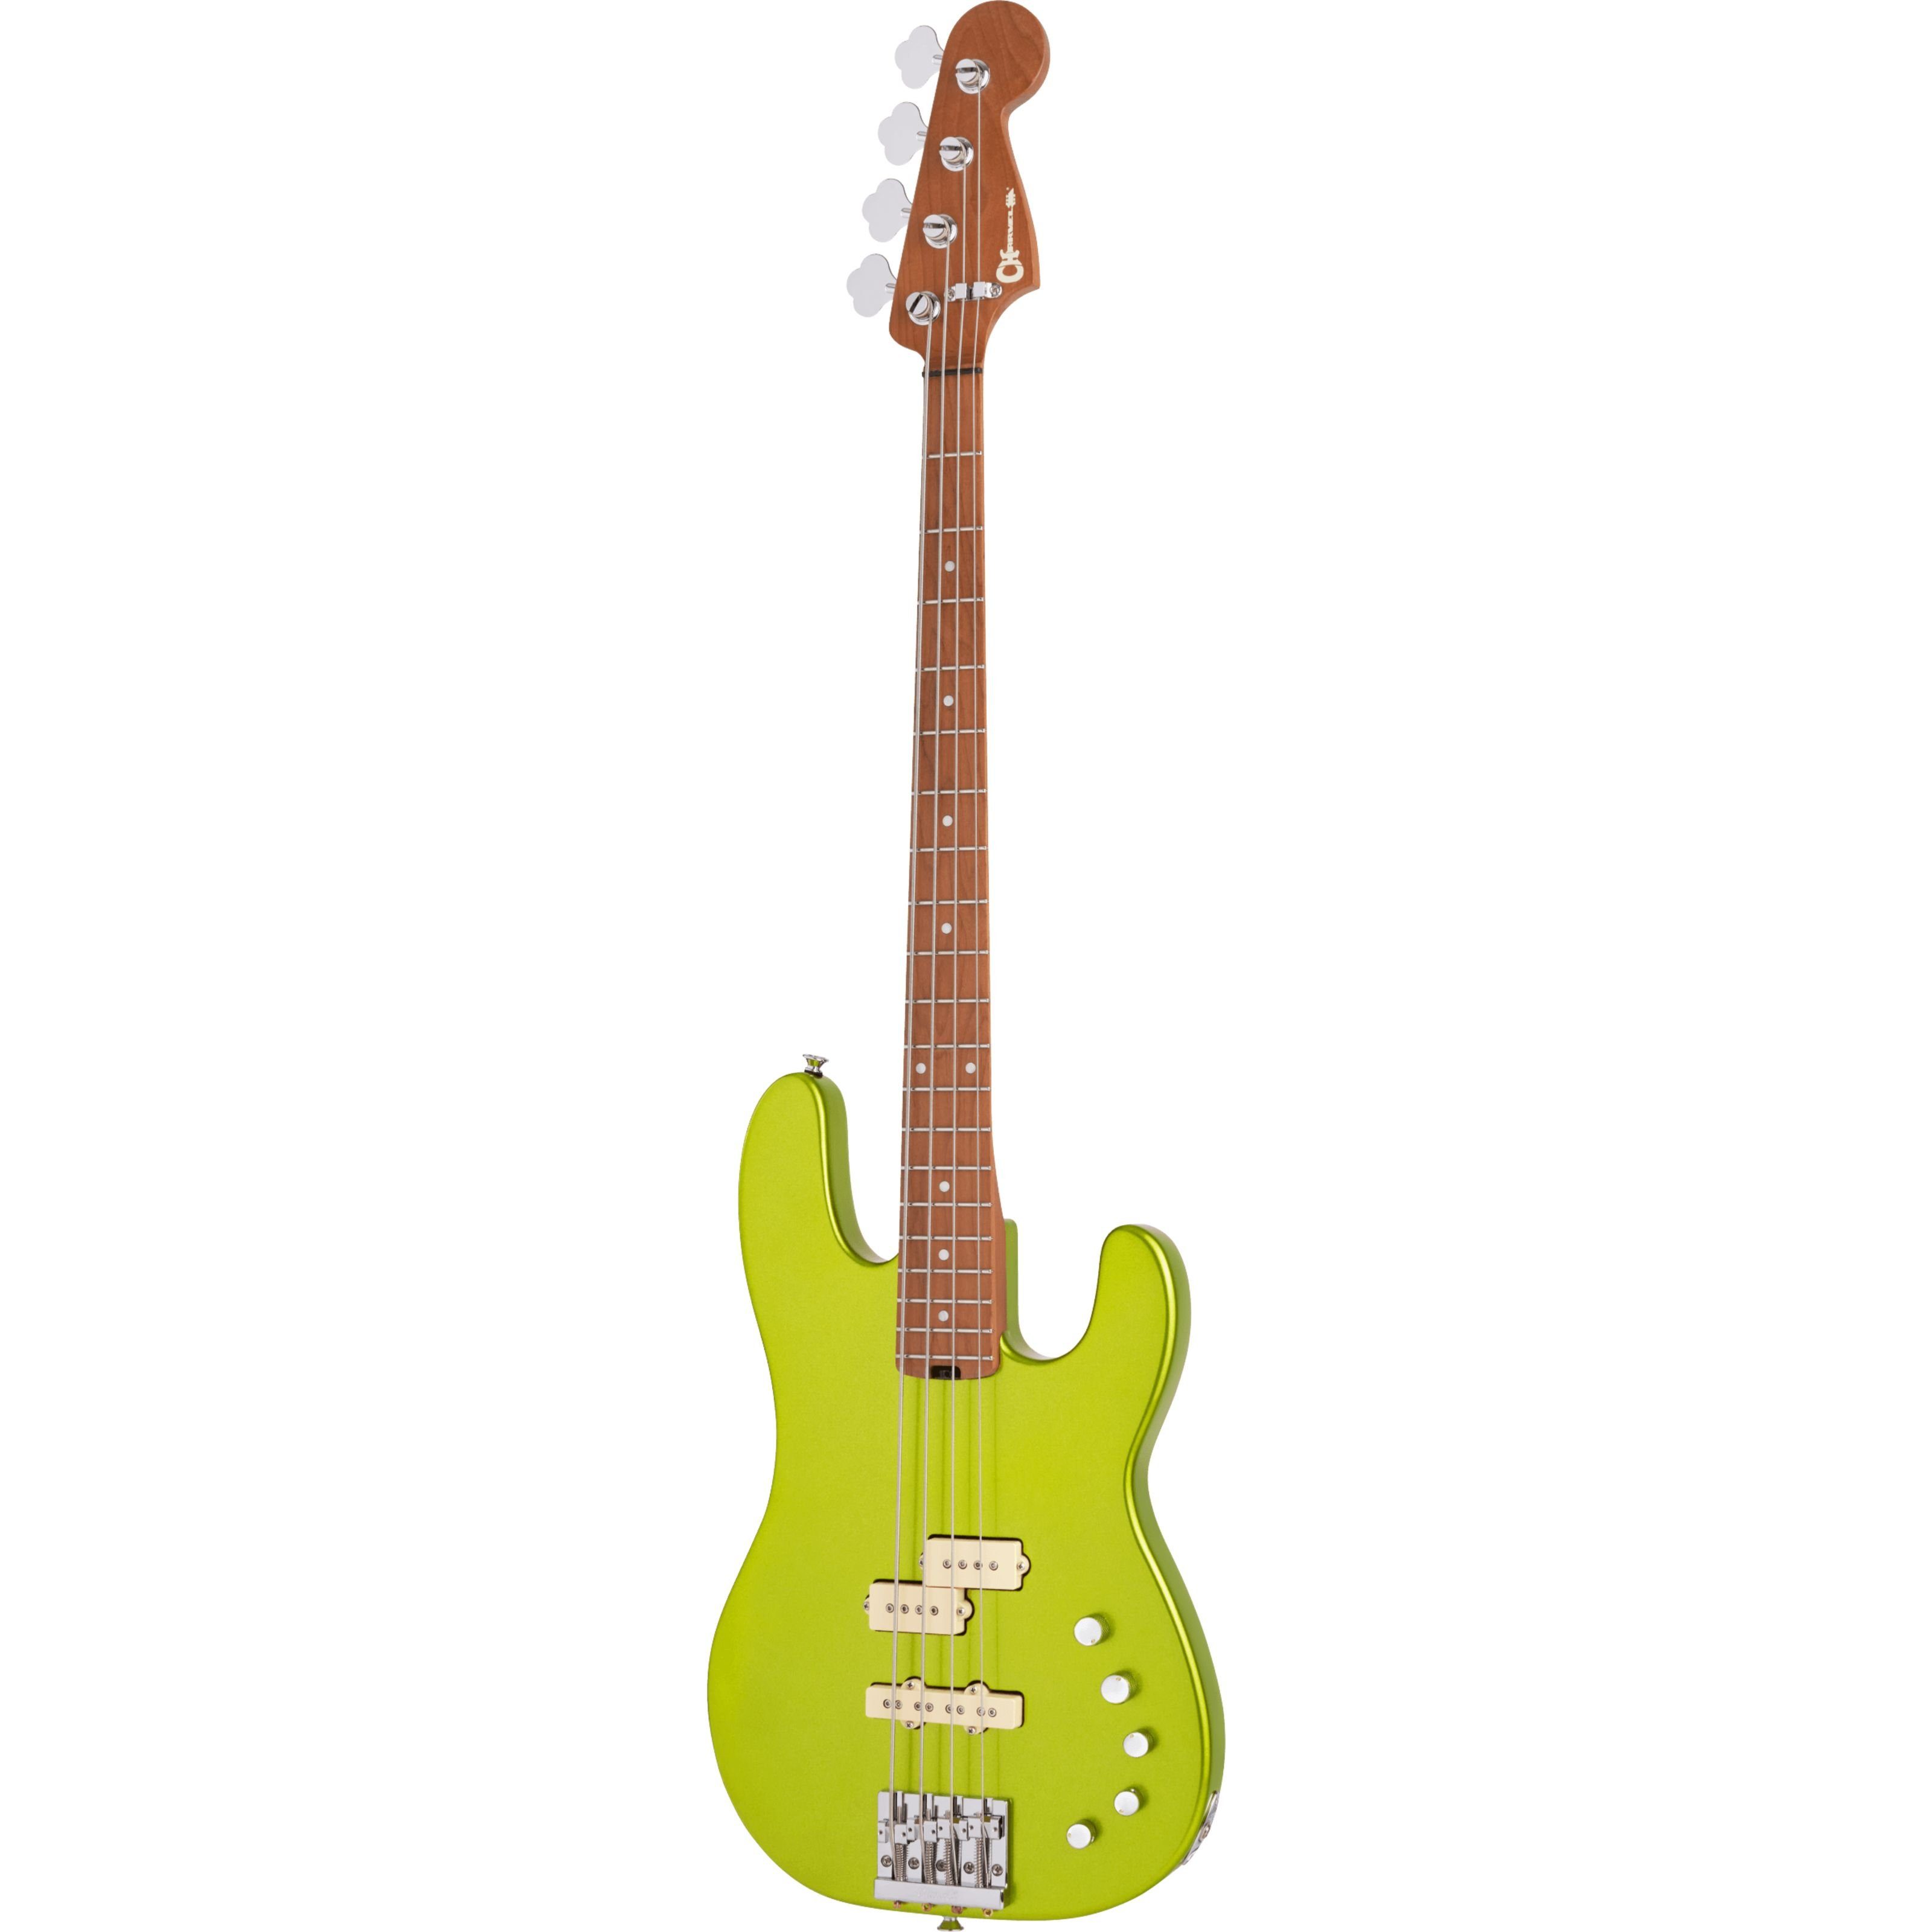 Dimas Lime PJ Spielzeug-Musikinstrument, E-Bass Pro-Mod CM Metallic San Bass IV - Green Charvel